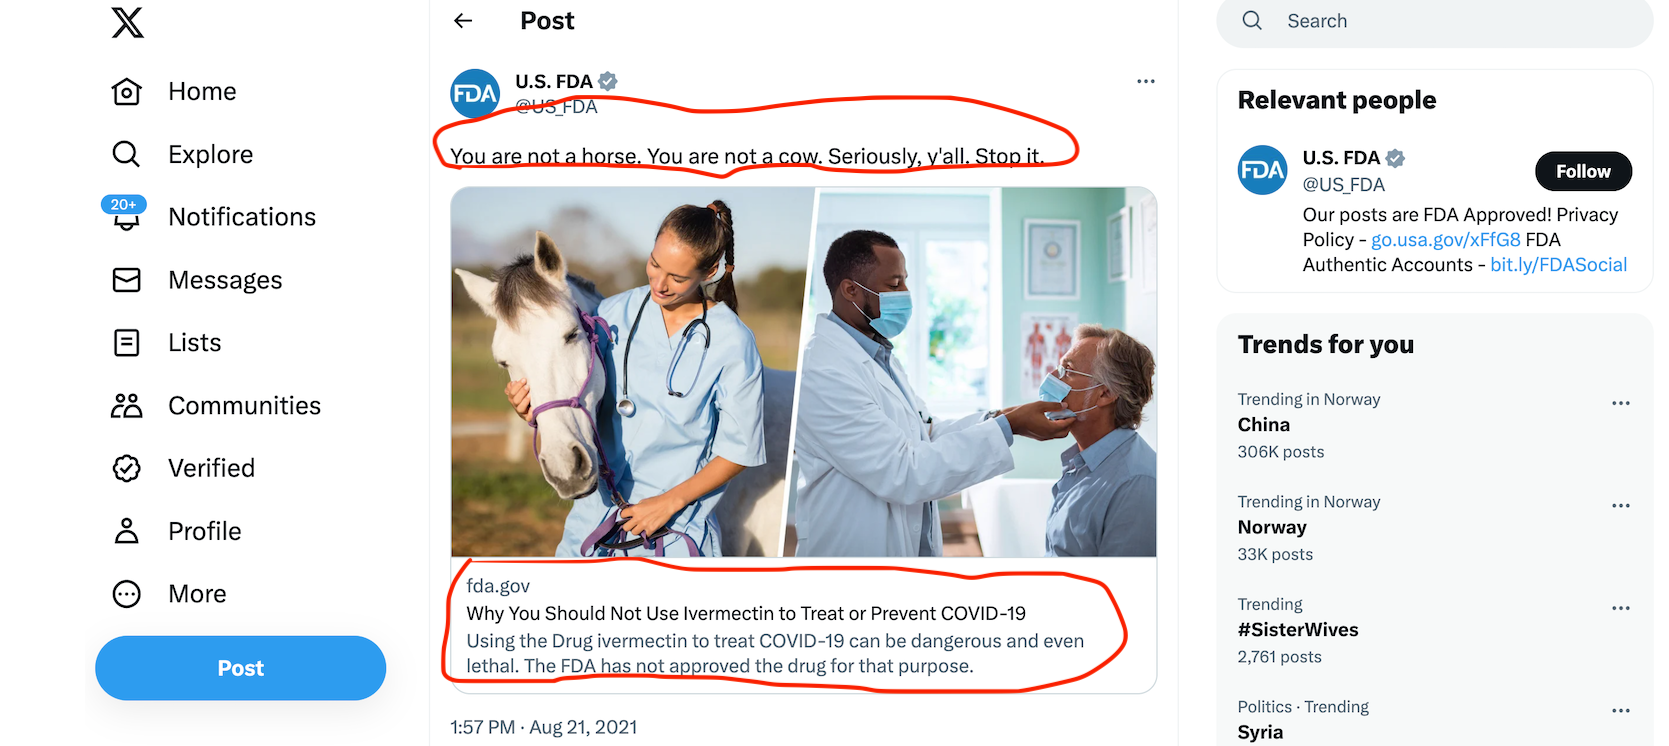 faksimile fra twitter, x, som viser en advarsel om at medisin er for hester